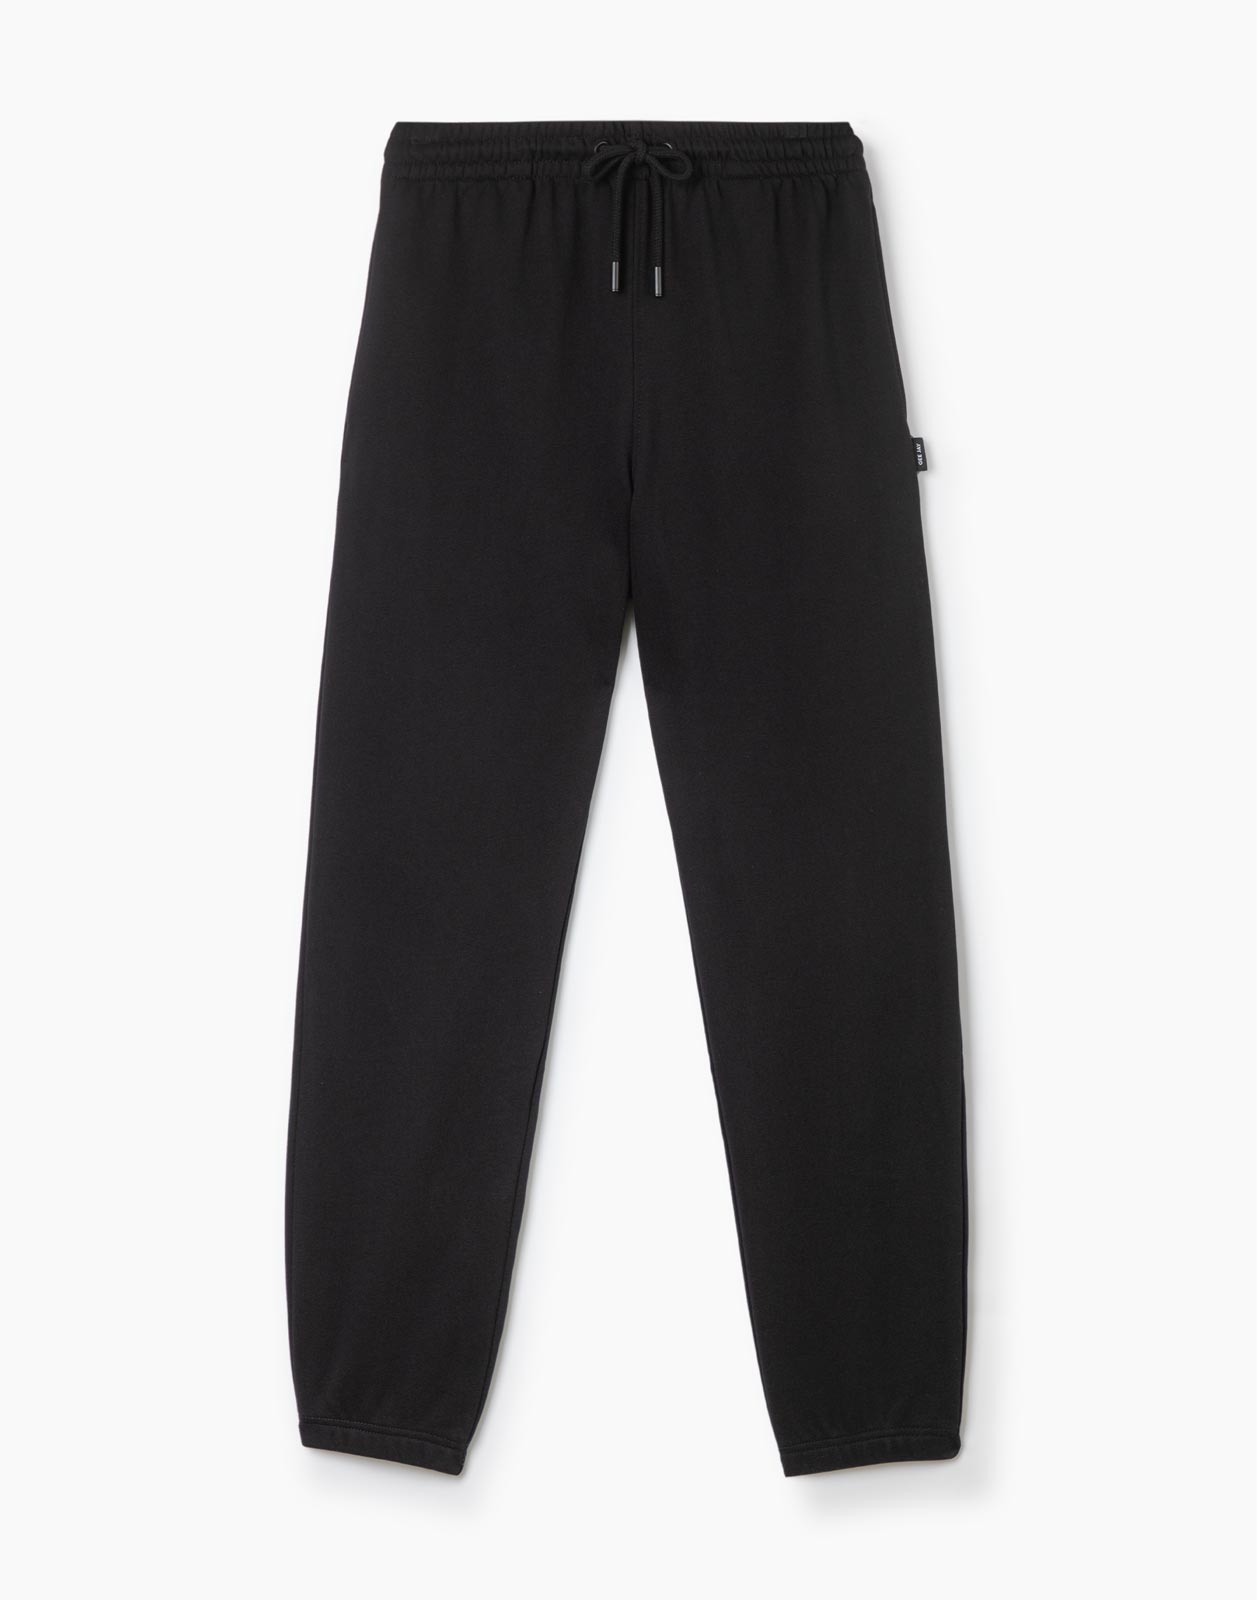 Спортивные брюки мужские Gloria Jeans BAC011399 черные M/182